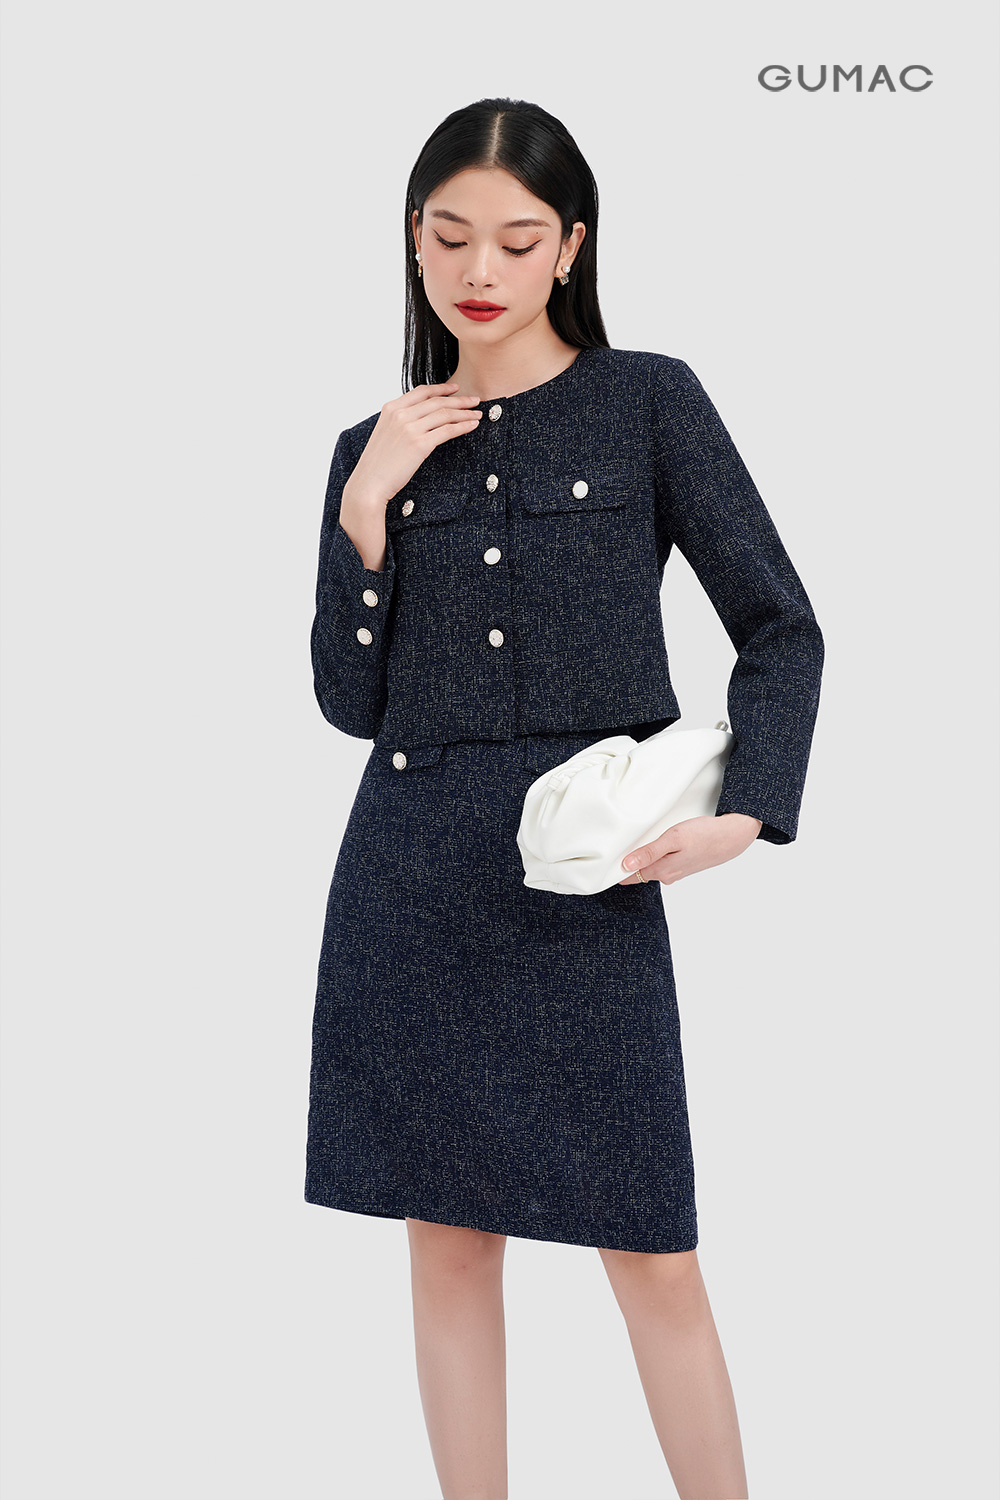 Áo khoác vải tweed  Váy hai mảnh Bộ đồ công sở cho phụ nữ  Website bán  hàng Doctor Khỏe Đẹp Thông Minh